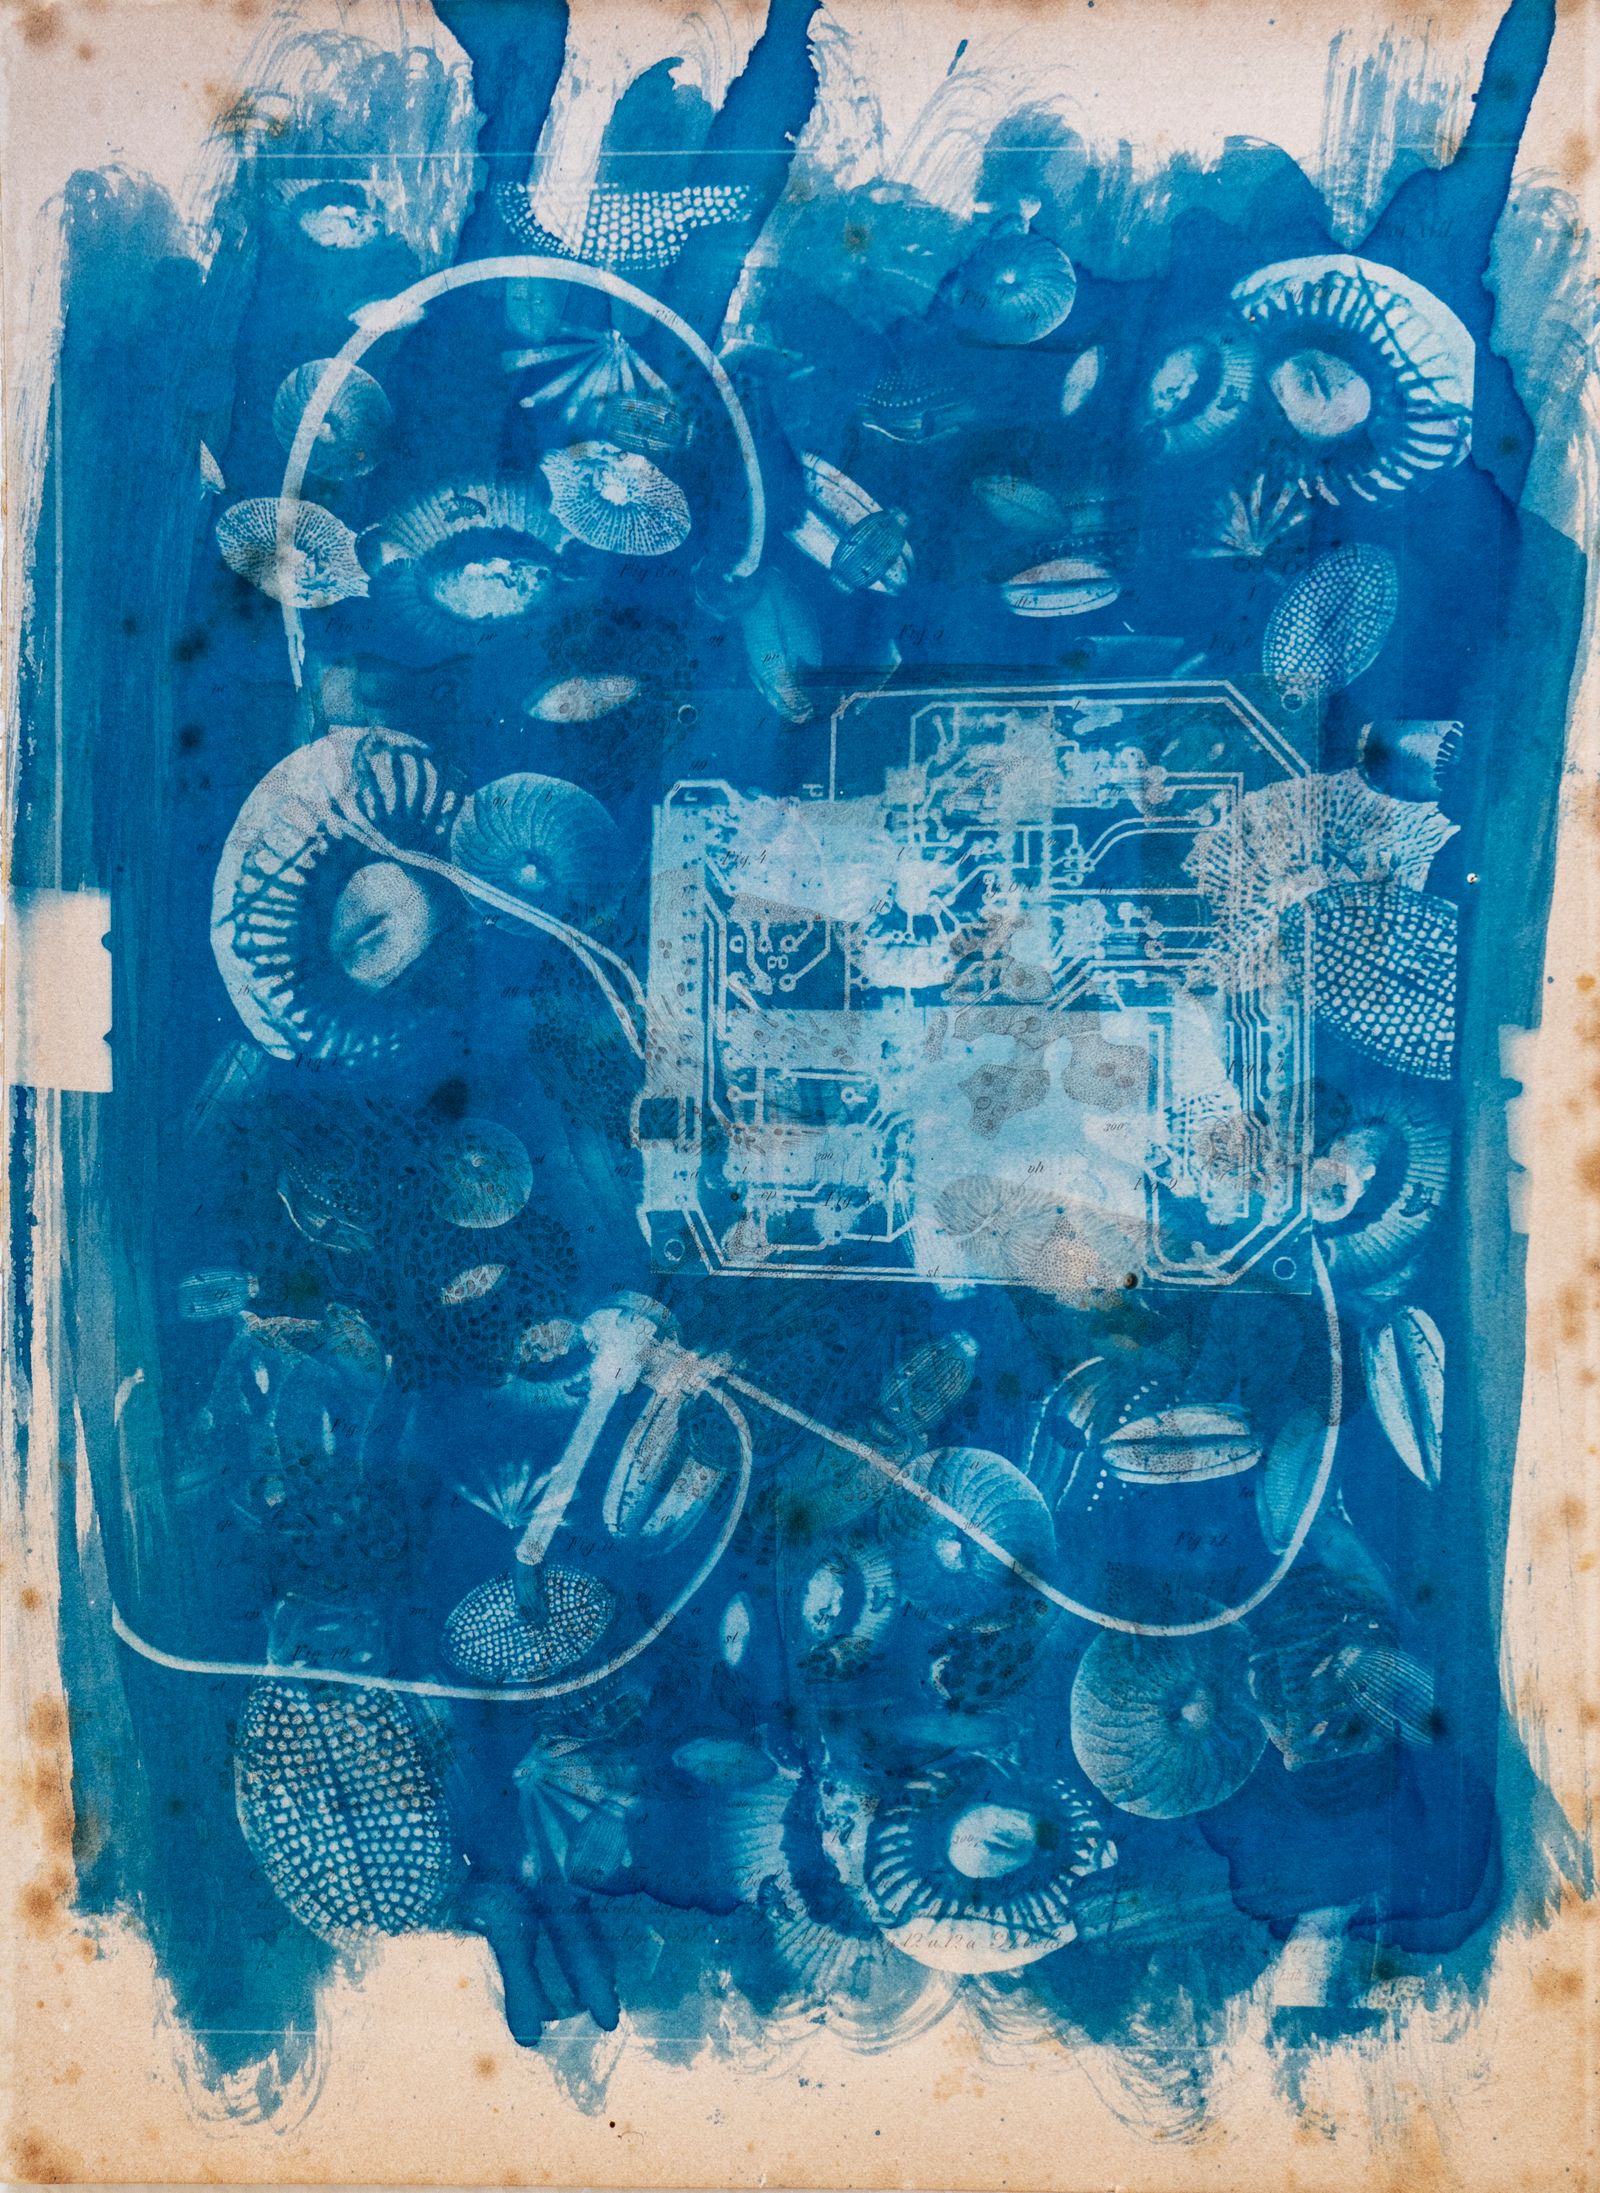 © Florence Iff - Amalgamated Fragmentation/ Technosphere 1 cyanotype on vintage lithography